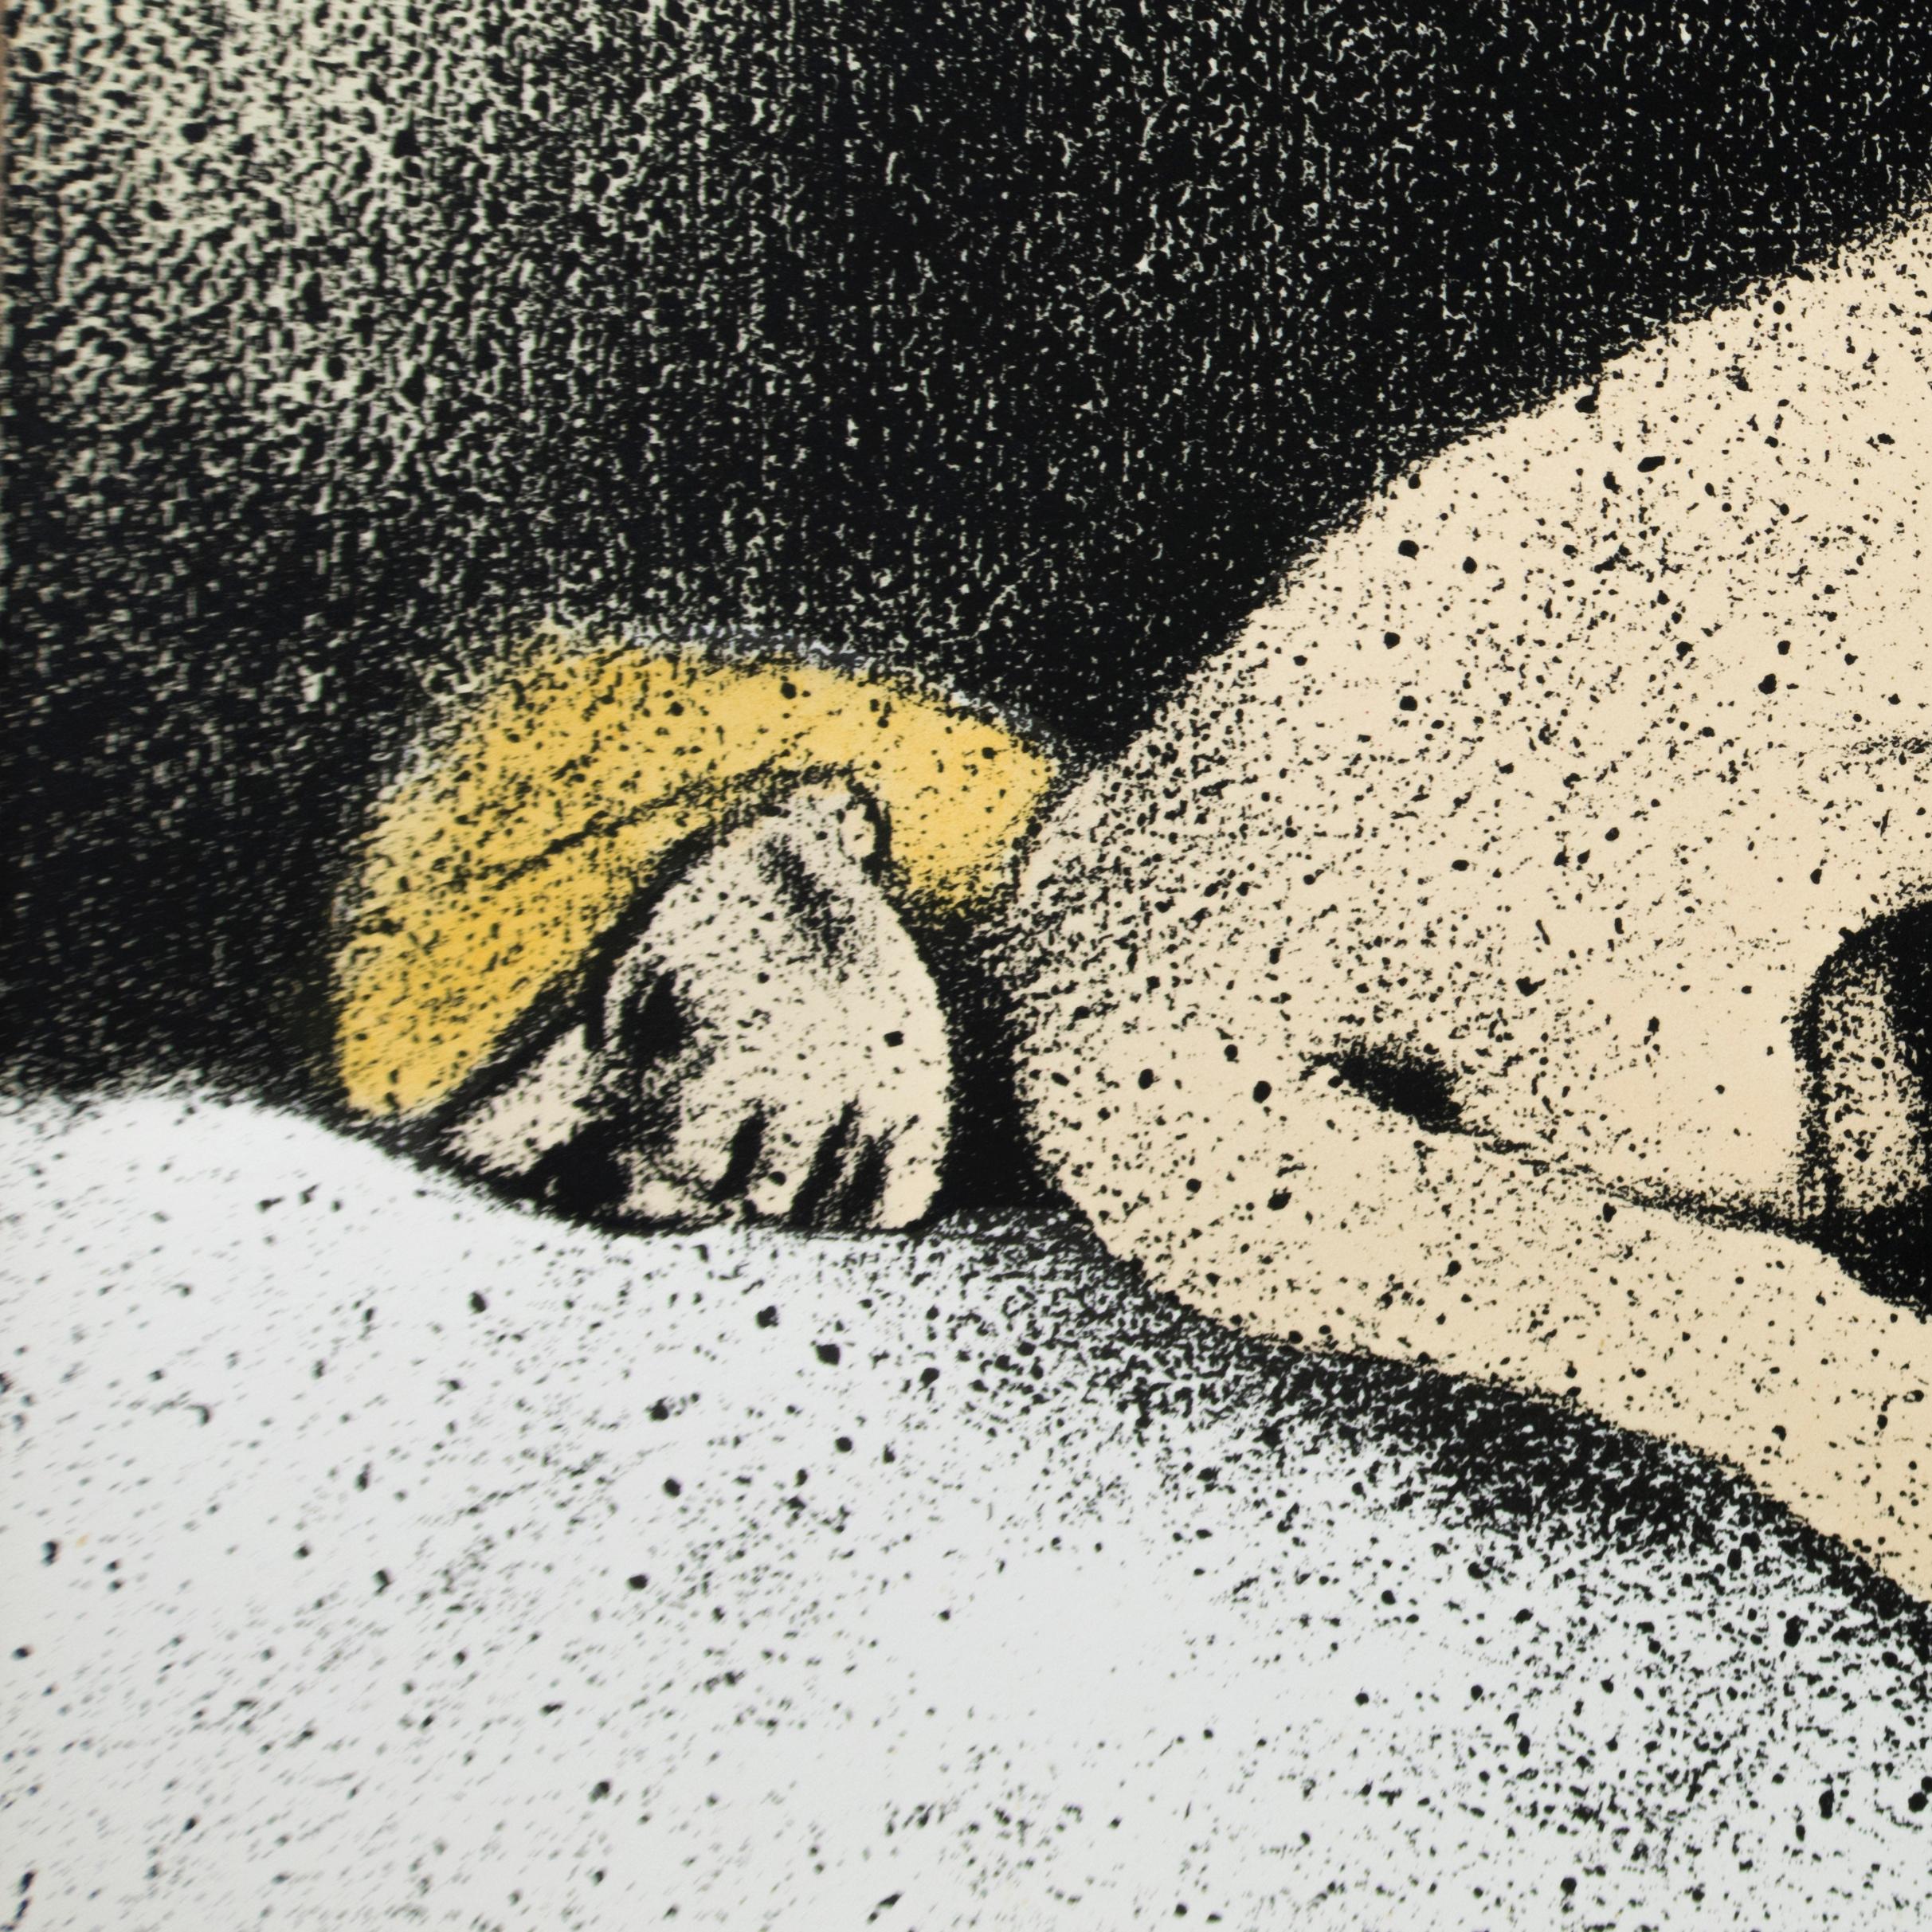 Un badinage érotique entre une femme blonde nue allongée, et un homme nu, sur un lit aux draps blancs. De subtiles nuances de pêche, de feu, de jaune, de gris et d'ombre noire se dessinent derrière le couple. Le dessin élégant d'Eleg tempère cette